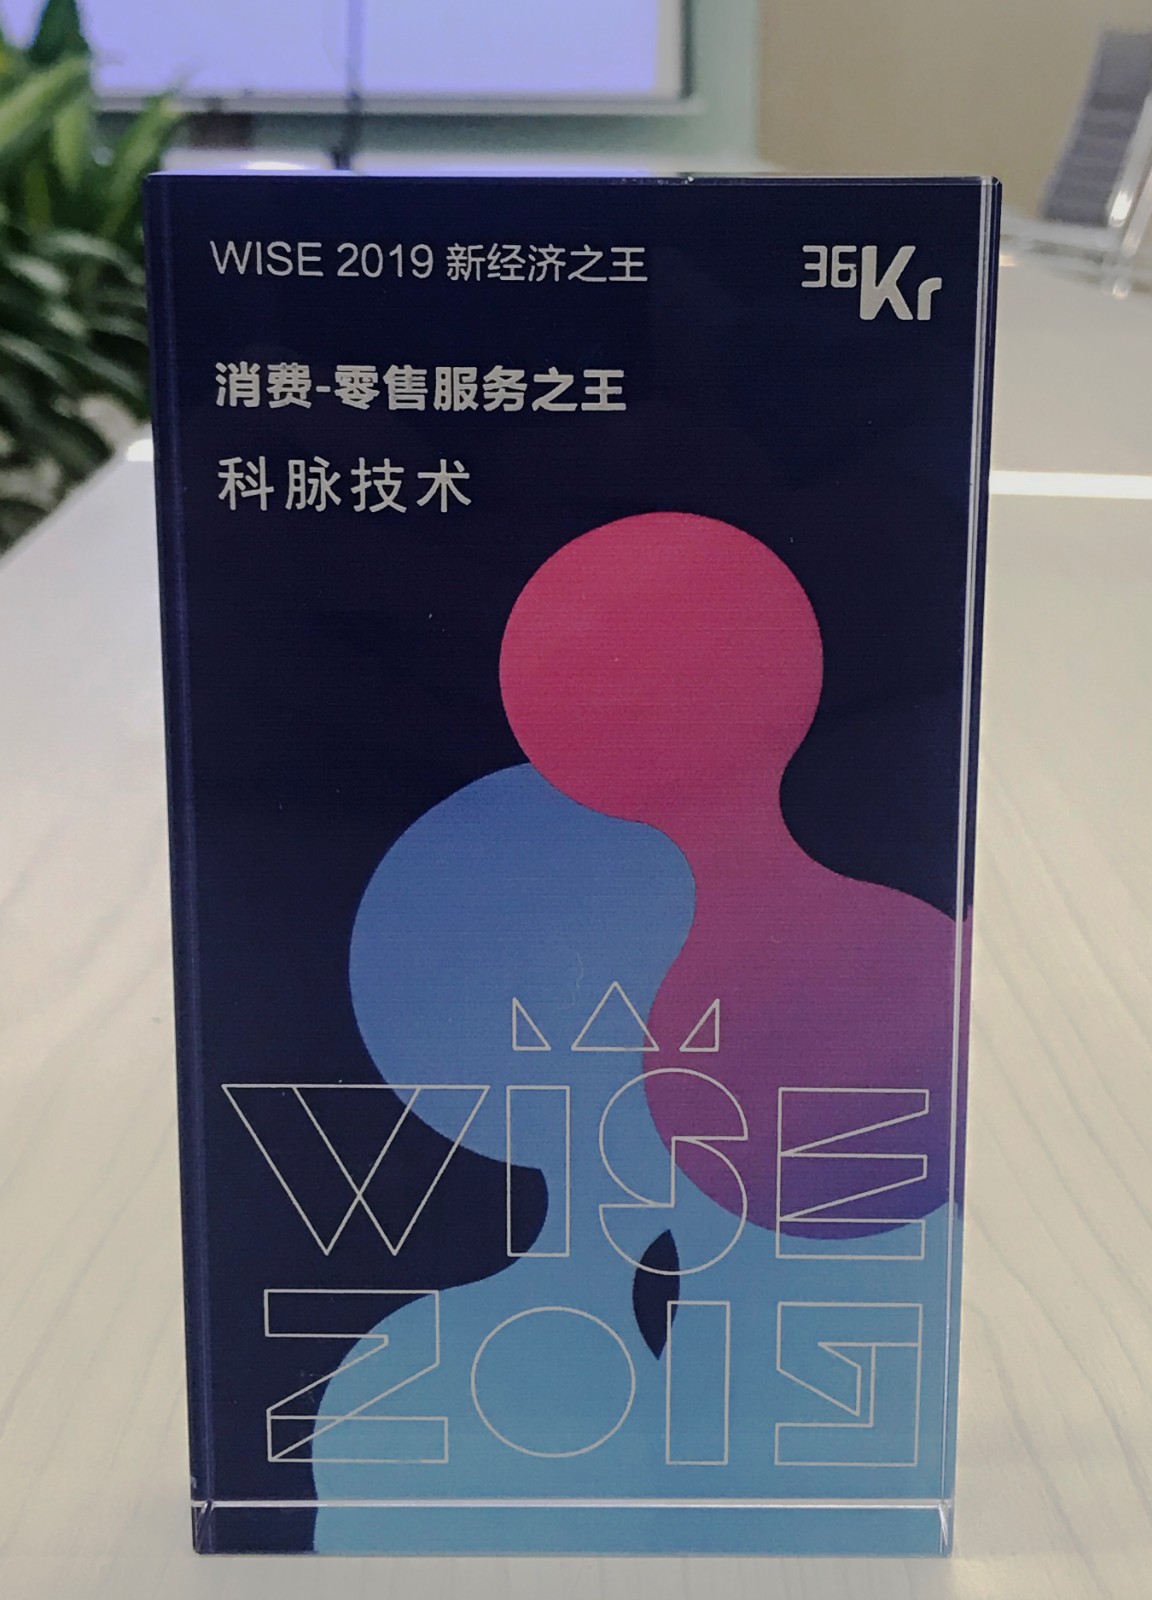 WISE2019新经济之王，科脉获“消费-零售服务之王”奖